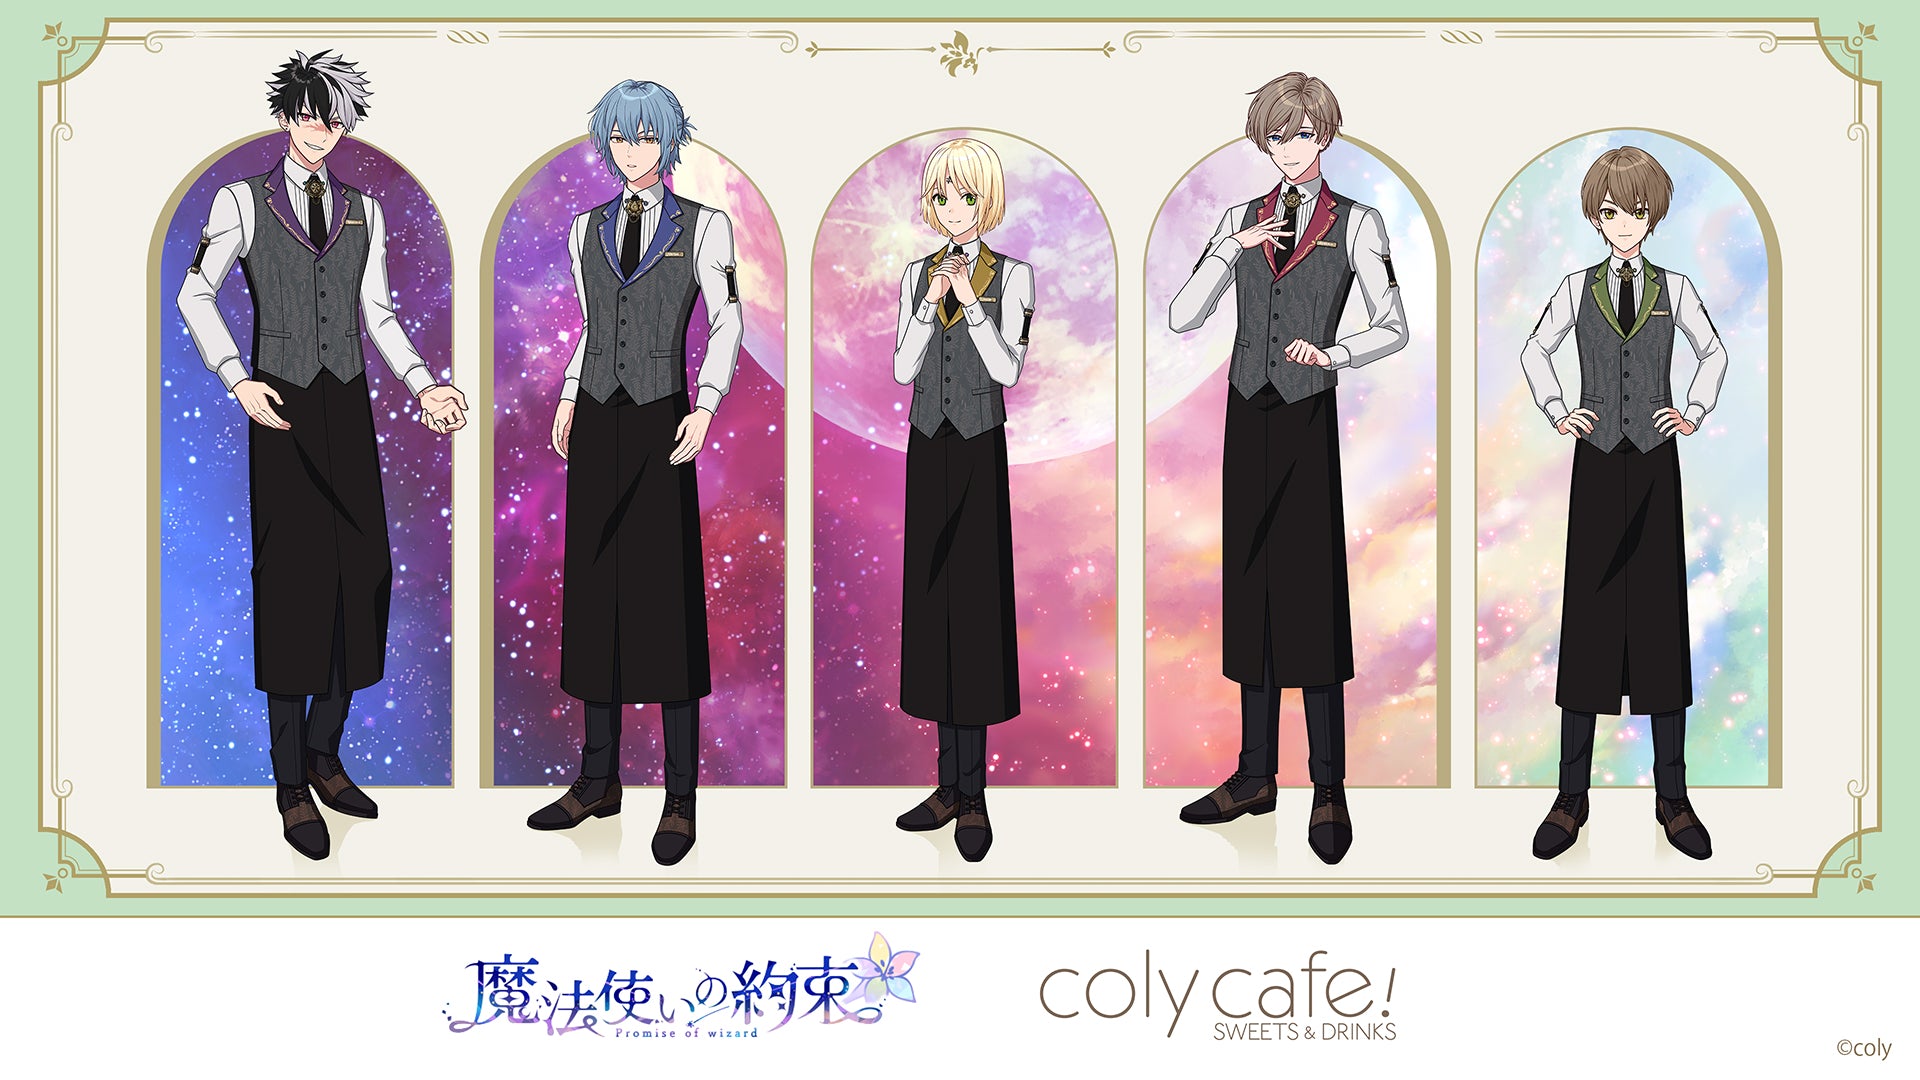 魔法使いの約束』 in coly cafe! vol.2 開催決定！